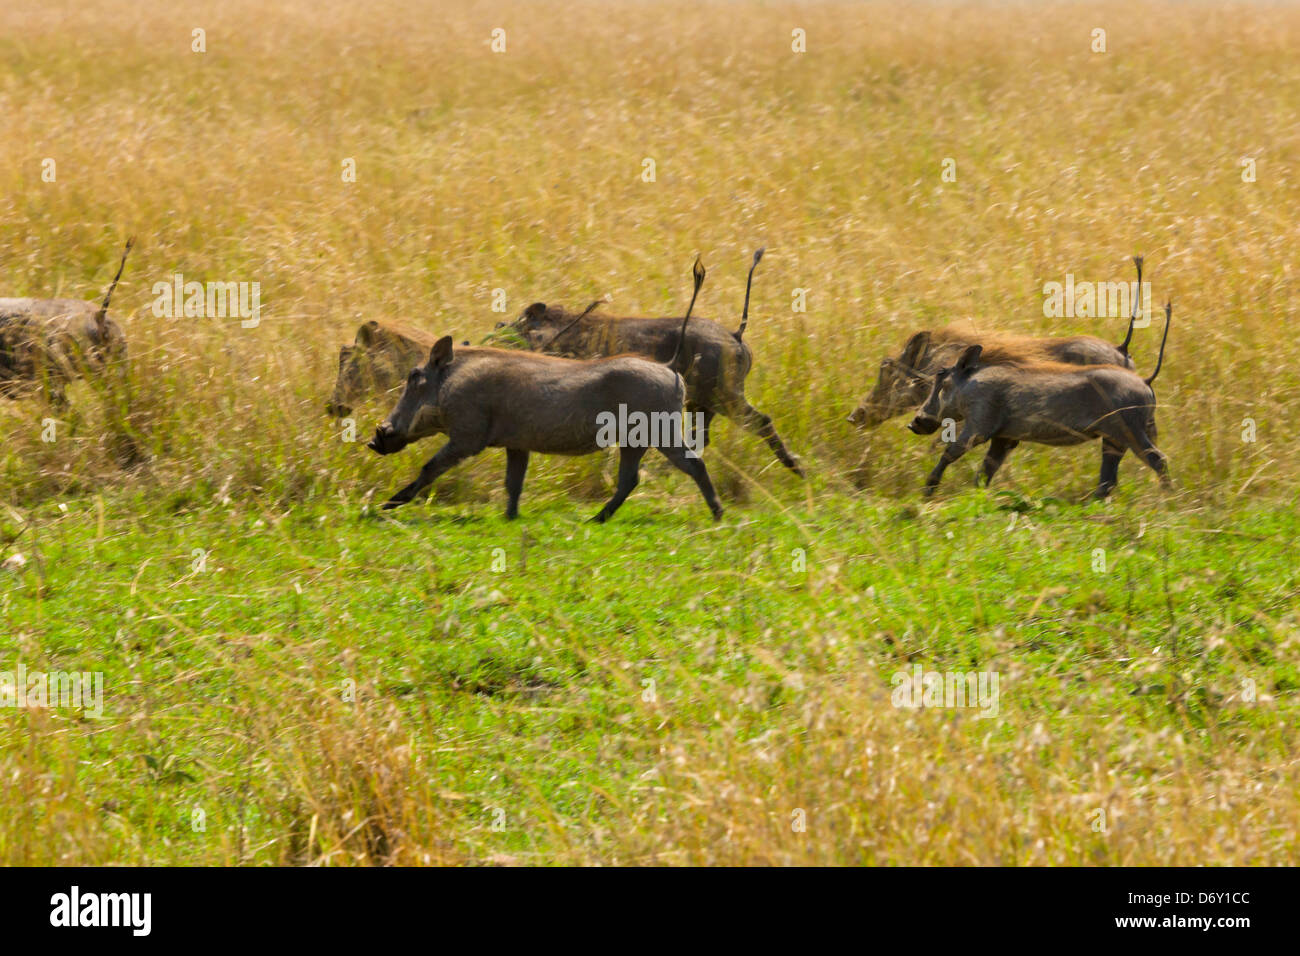 Warthog (Phacochoerus africanus), Masai Mara, Kenya Stock Photo